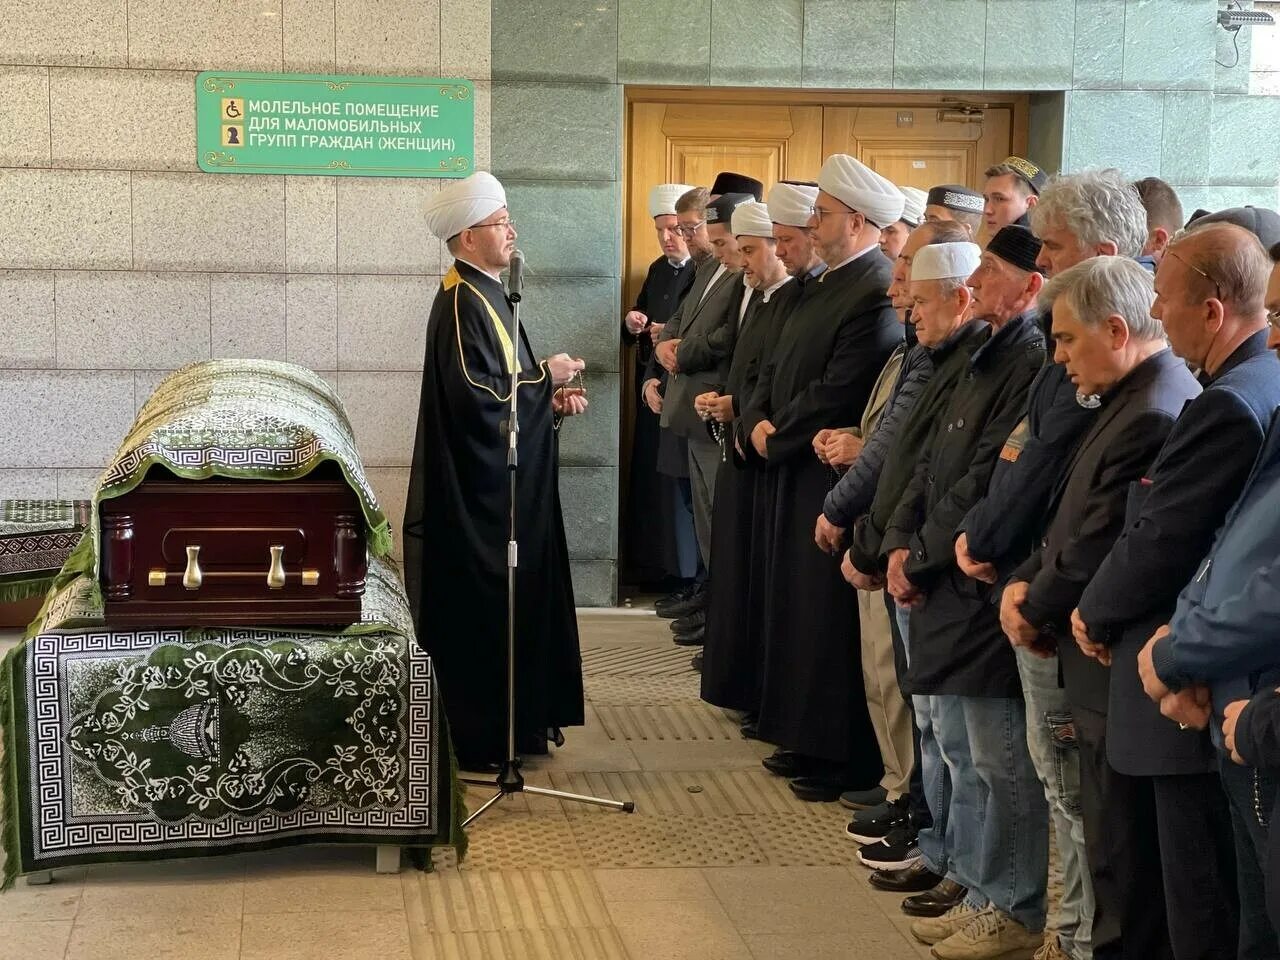 Ибрагимов похоронен. Прощание в Московской Соборной мечети. Соборная мечеть Москвы Ренат Ибрагимов.